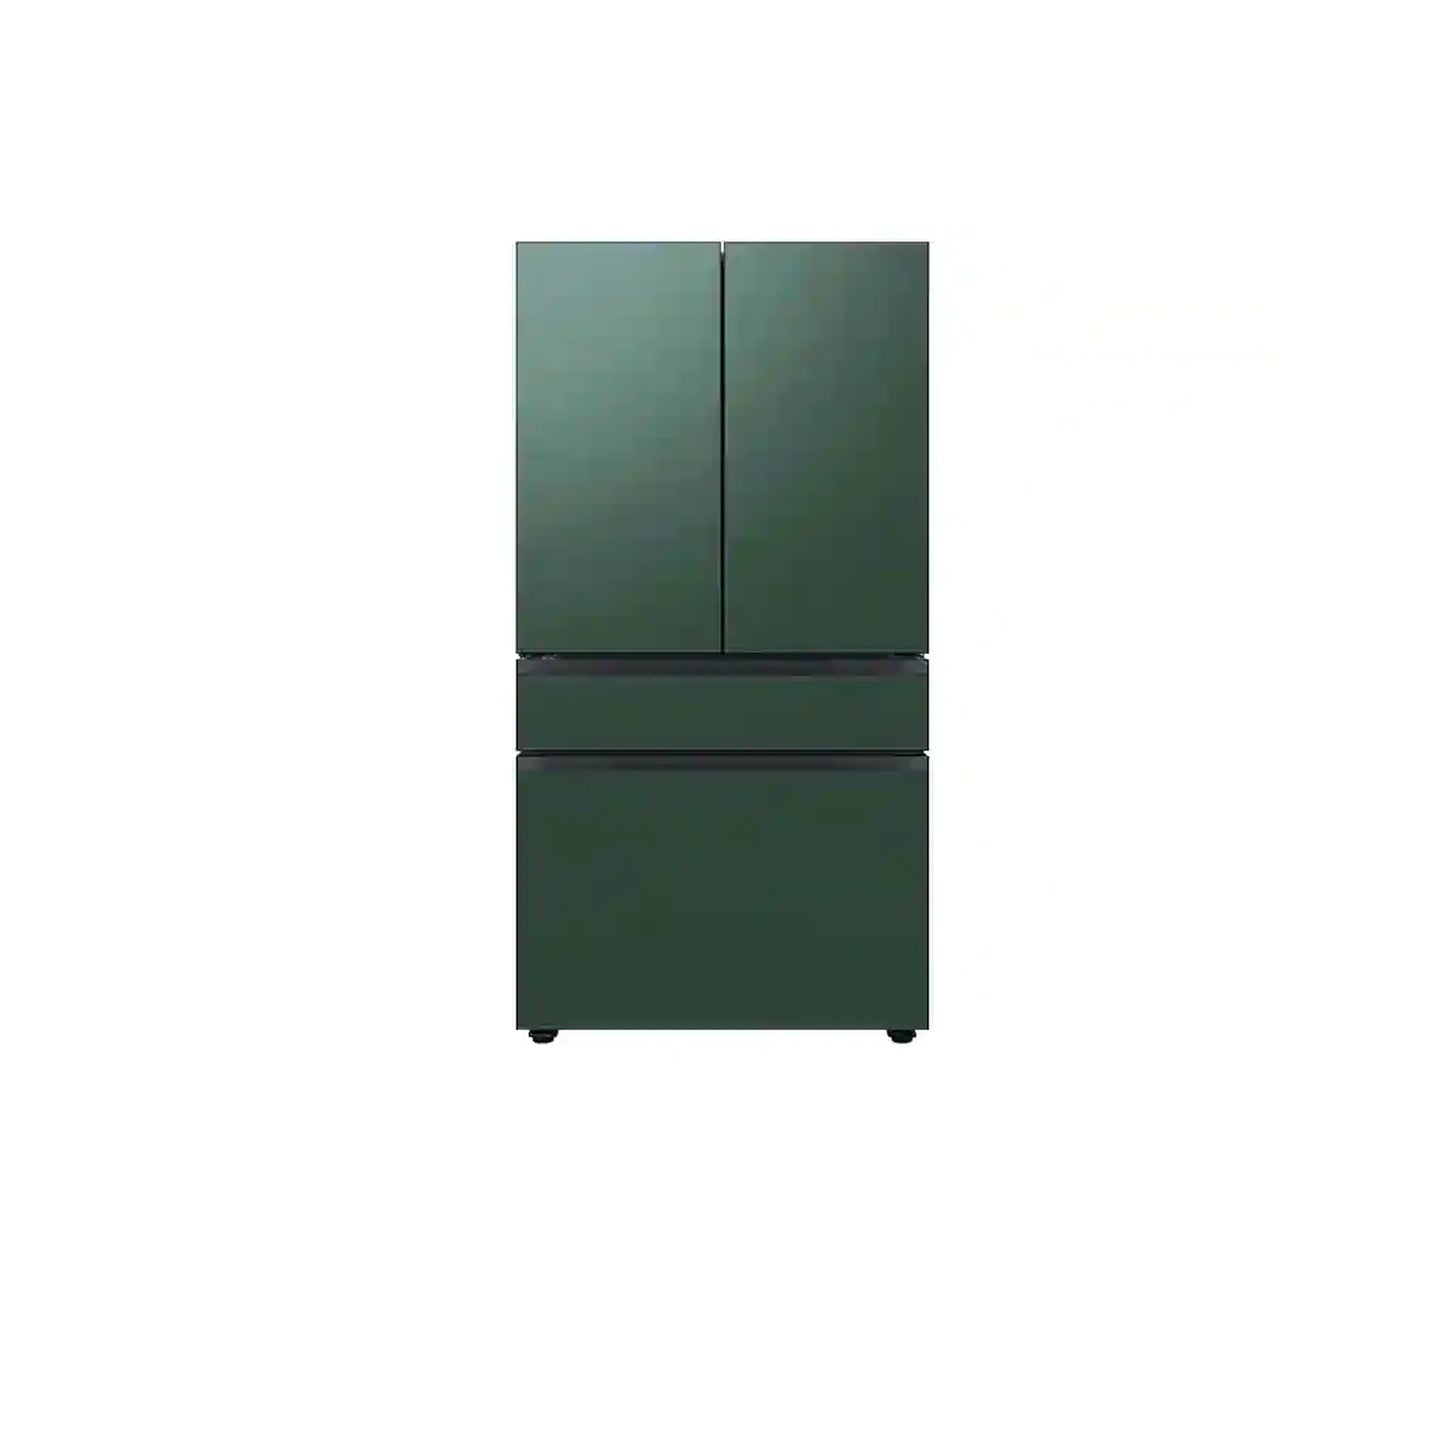 ثلاجة مخصصة بباب فرنسي بأربعة أبواب (23 قدمًا مكعبًا) مزودة بمركز المشروبات™ باللون الأبيض الزجاجي.